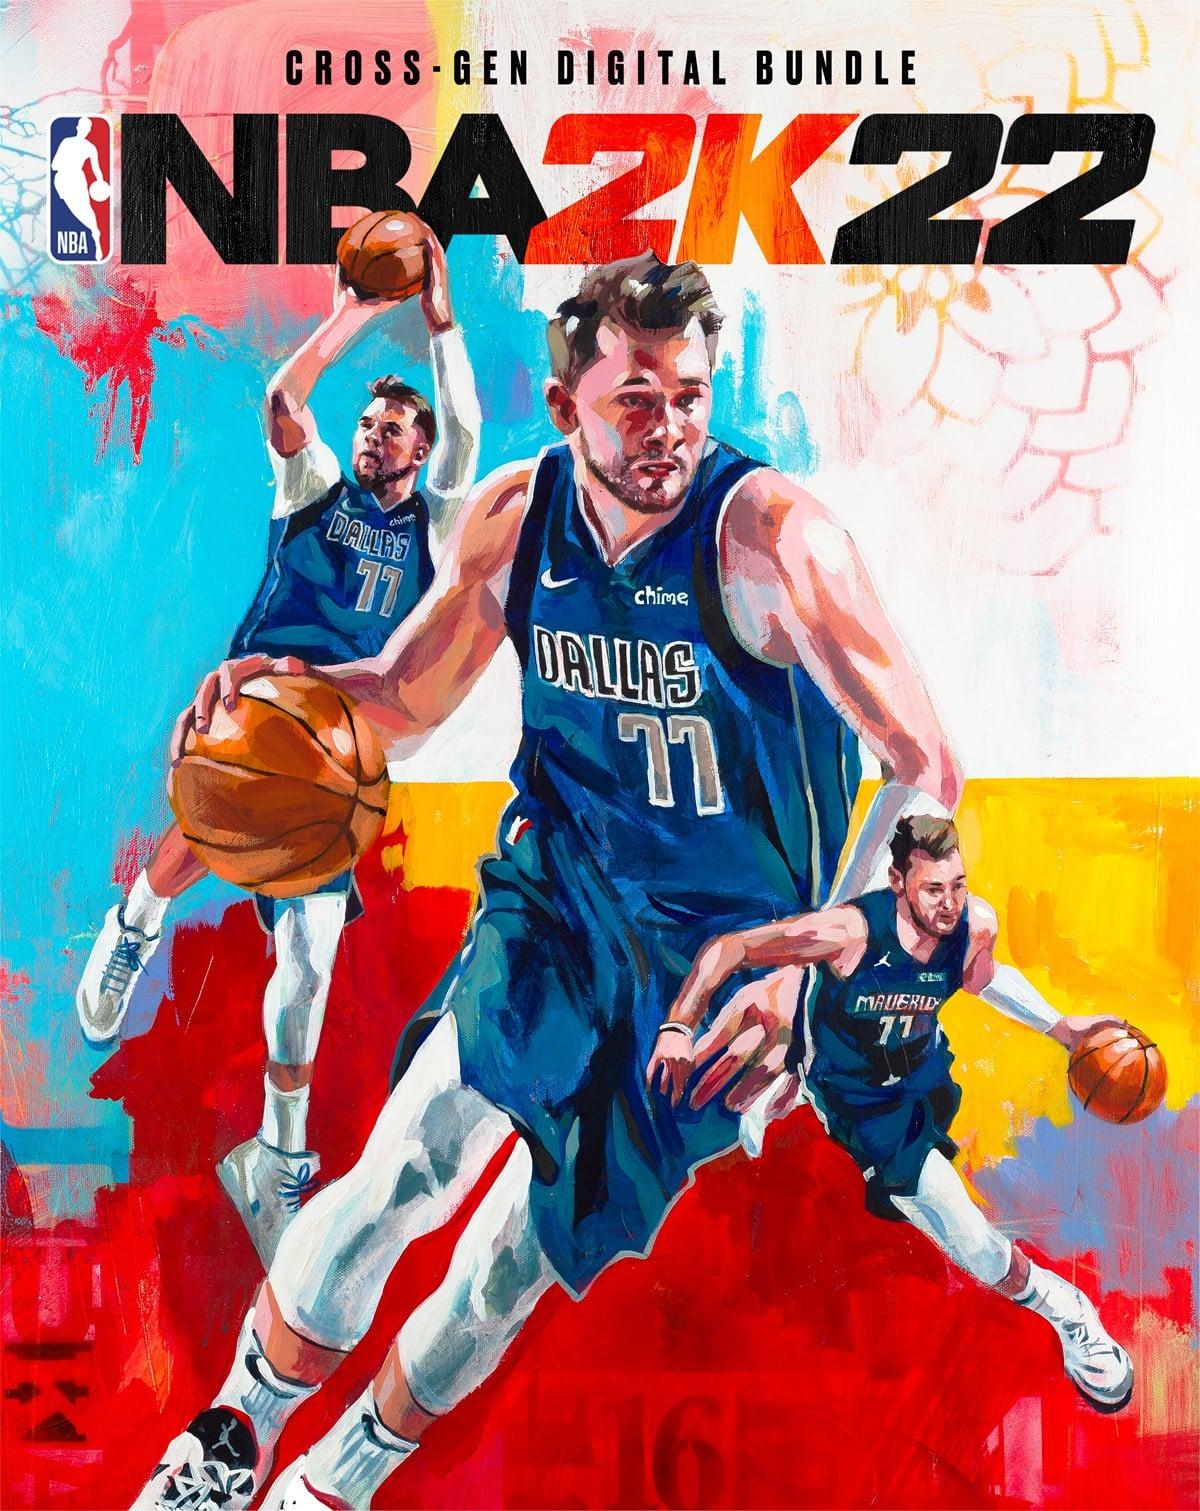 NBA 2K22 Cross-Gen Bundle items